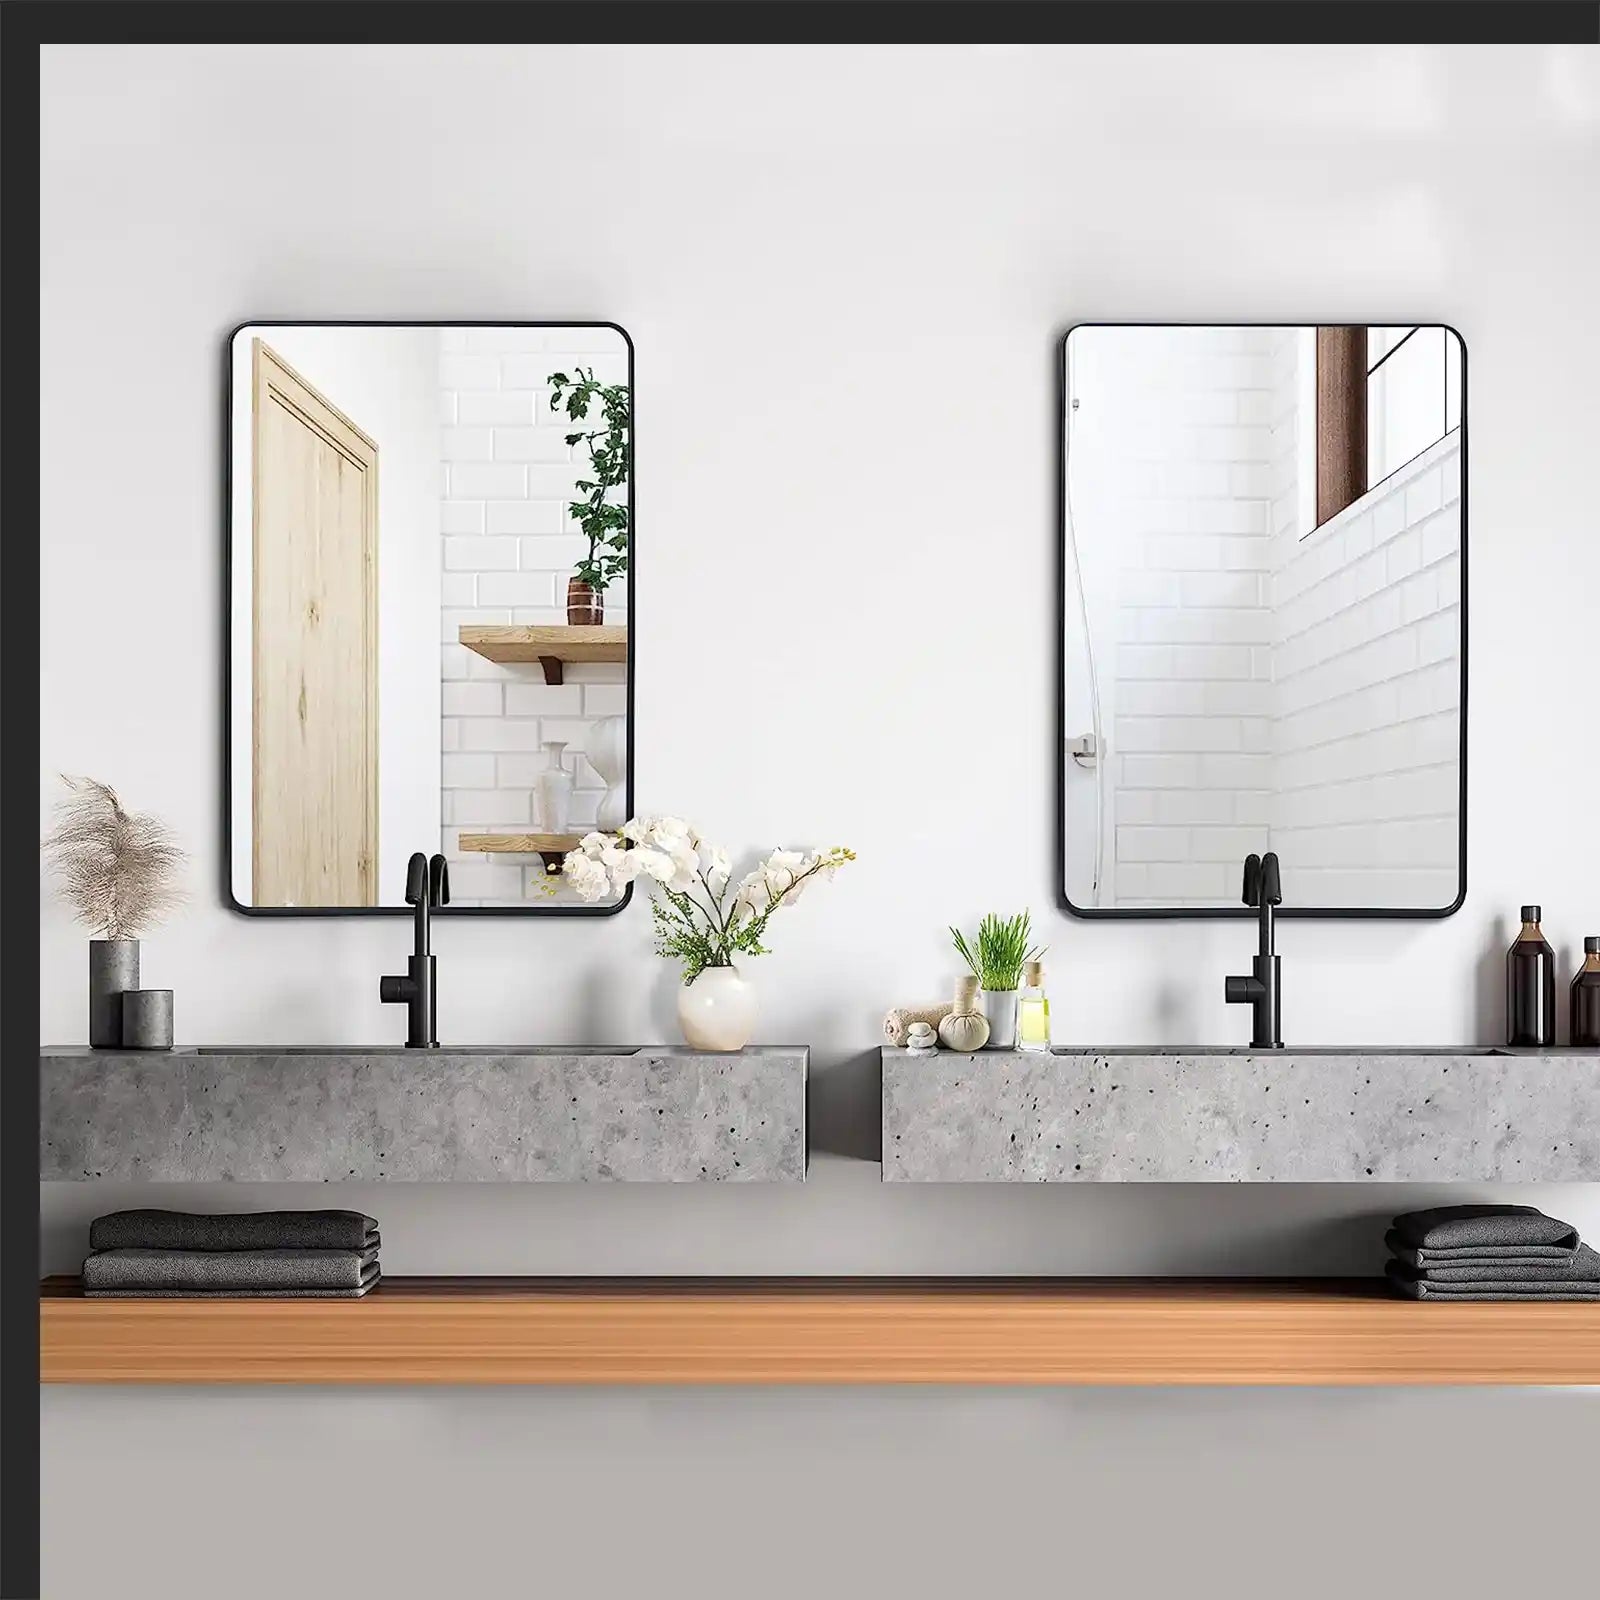 Espejo de pared rectangular con marco de metal negro, espejo de baño con borde puntiagudo para entradas, salas de estar, baños (juego de 2)